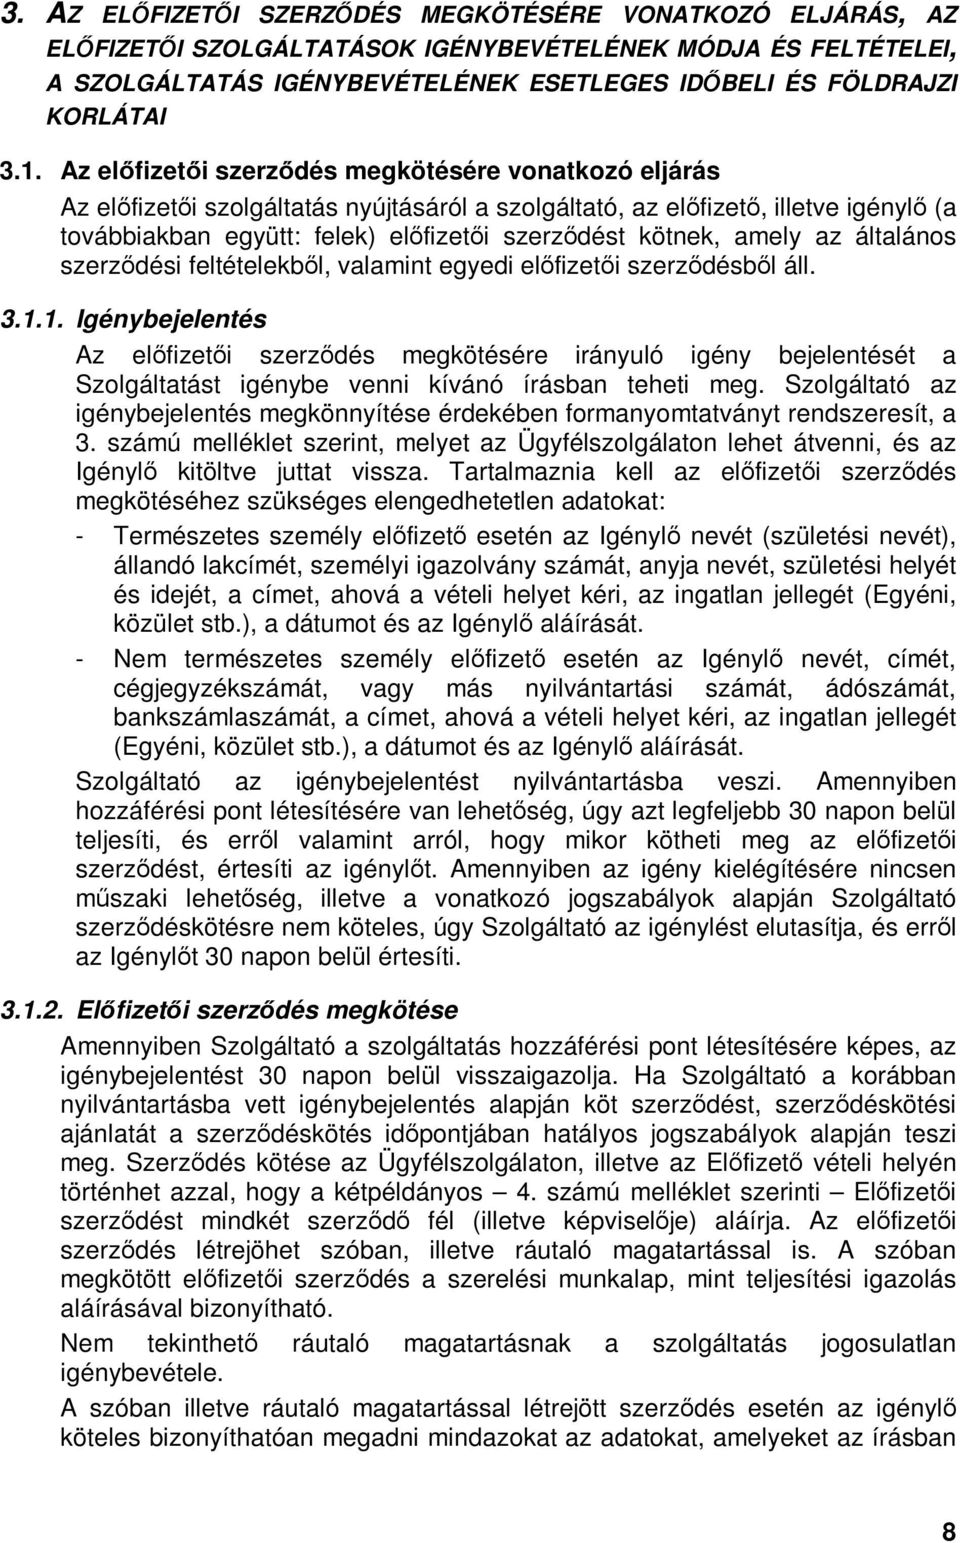 kötnek, amely az általános szerzıdési feltételekbıl, valamint egyedi elıfizetıi szerzıdésbıl áll. 3.1.